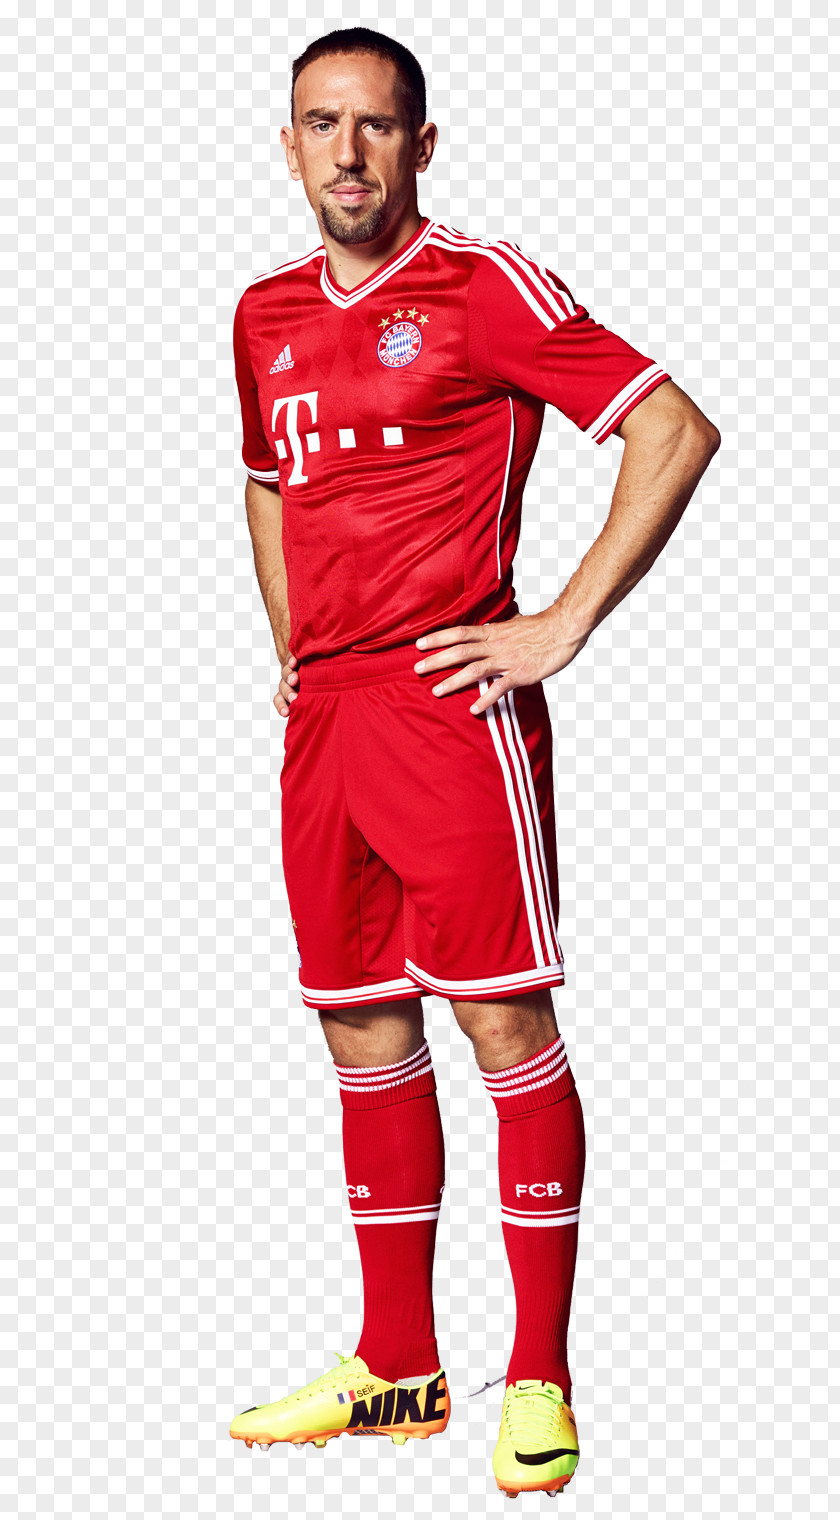 Football FC Bayern Munich Player PNG